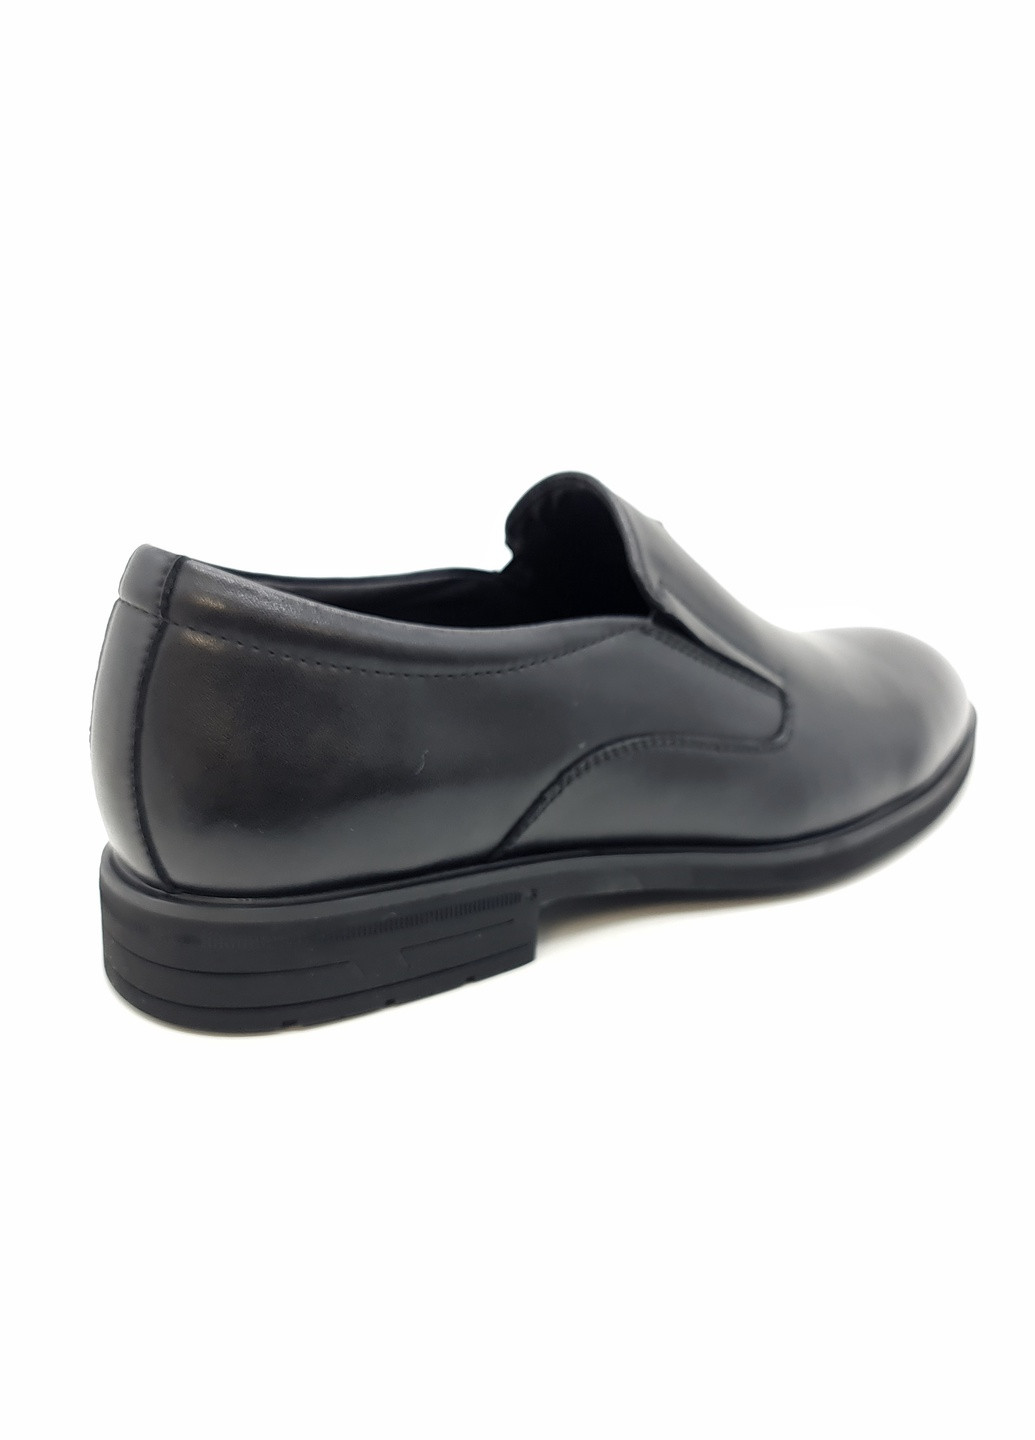 Черные чоловічі туфлі чорні шкіряні ya-11-11 27 см (р) Yalasou